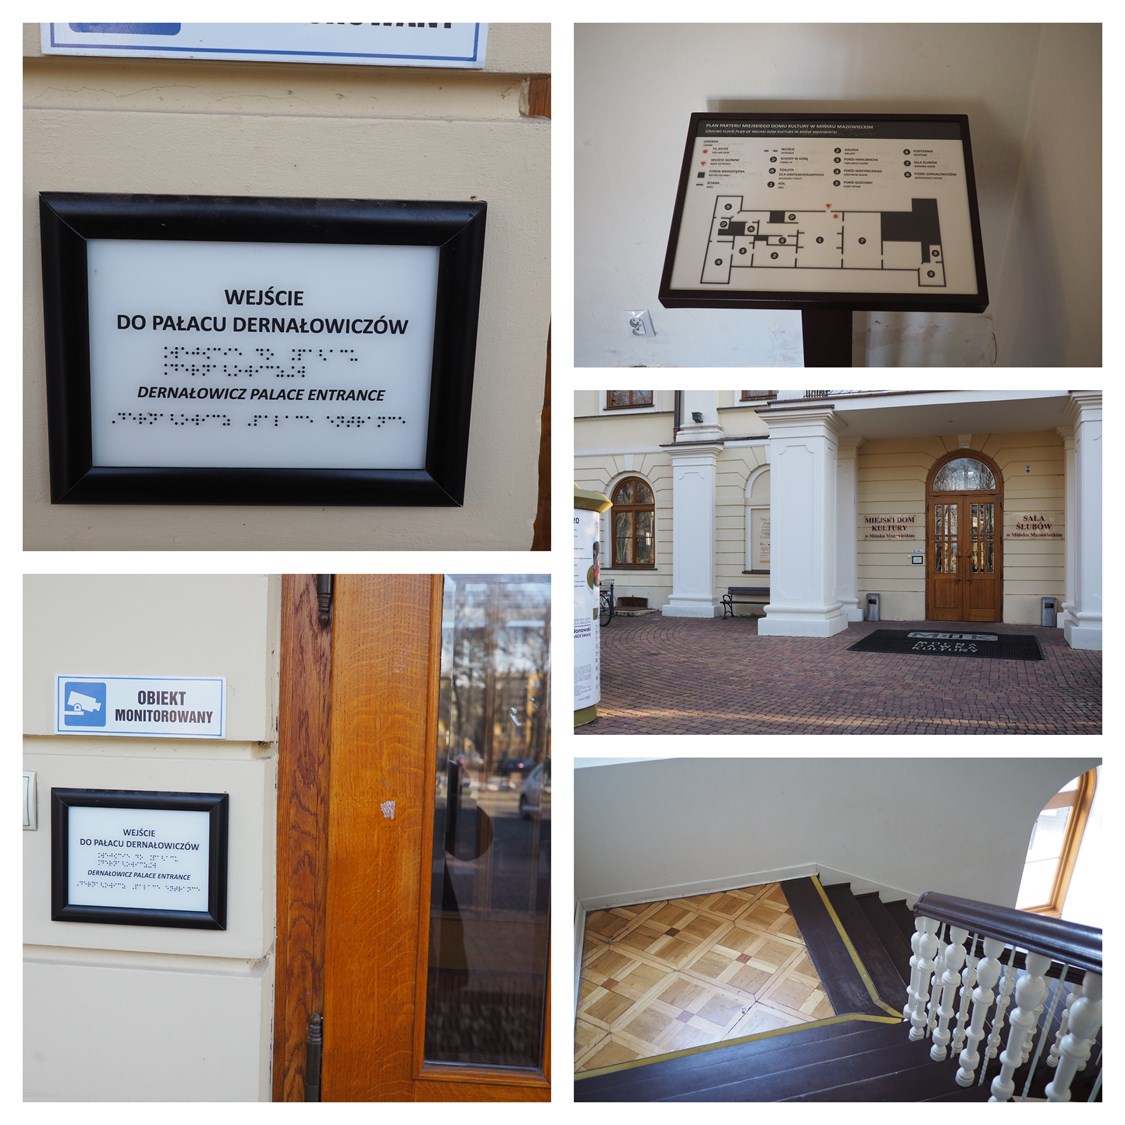 Dotykowy plan Pałacu Dernałowiczów i Miejskiego Domu Kultury w Mińsku Mazowieckim, dotykowe tabliczki informacyjne, taśmy kontrastowe na schodach